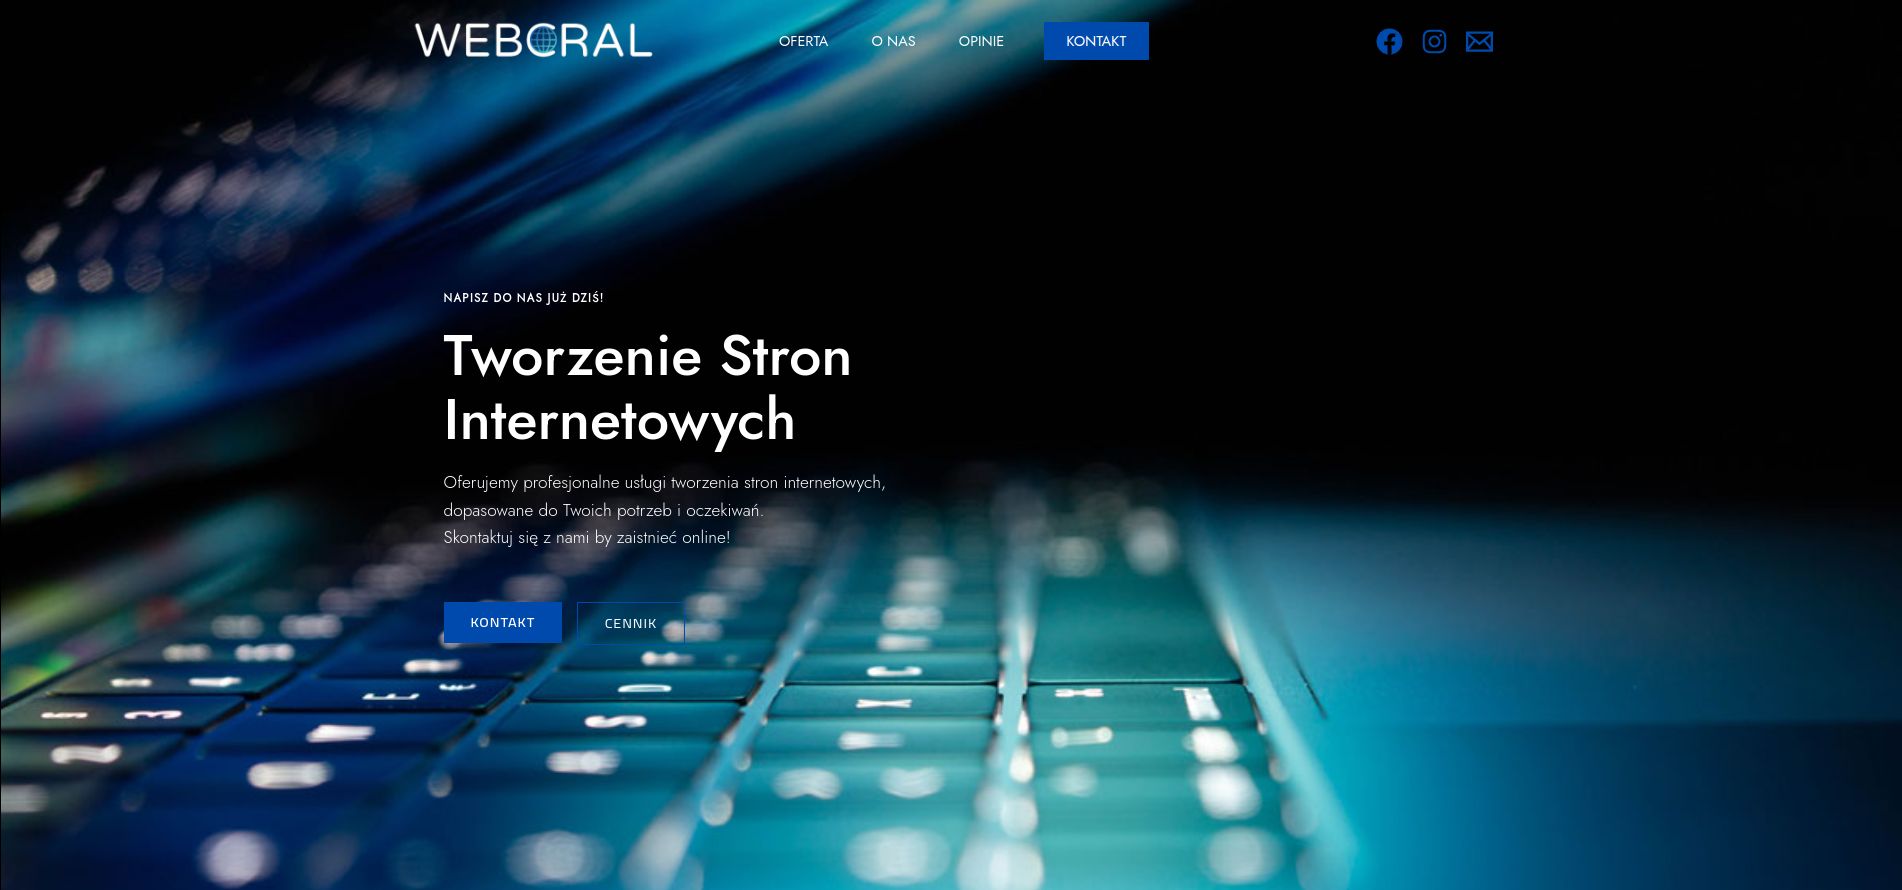 www.webcral.pl